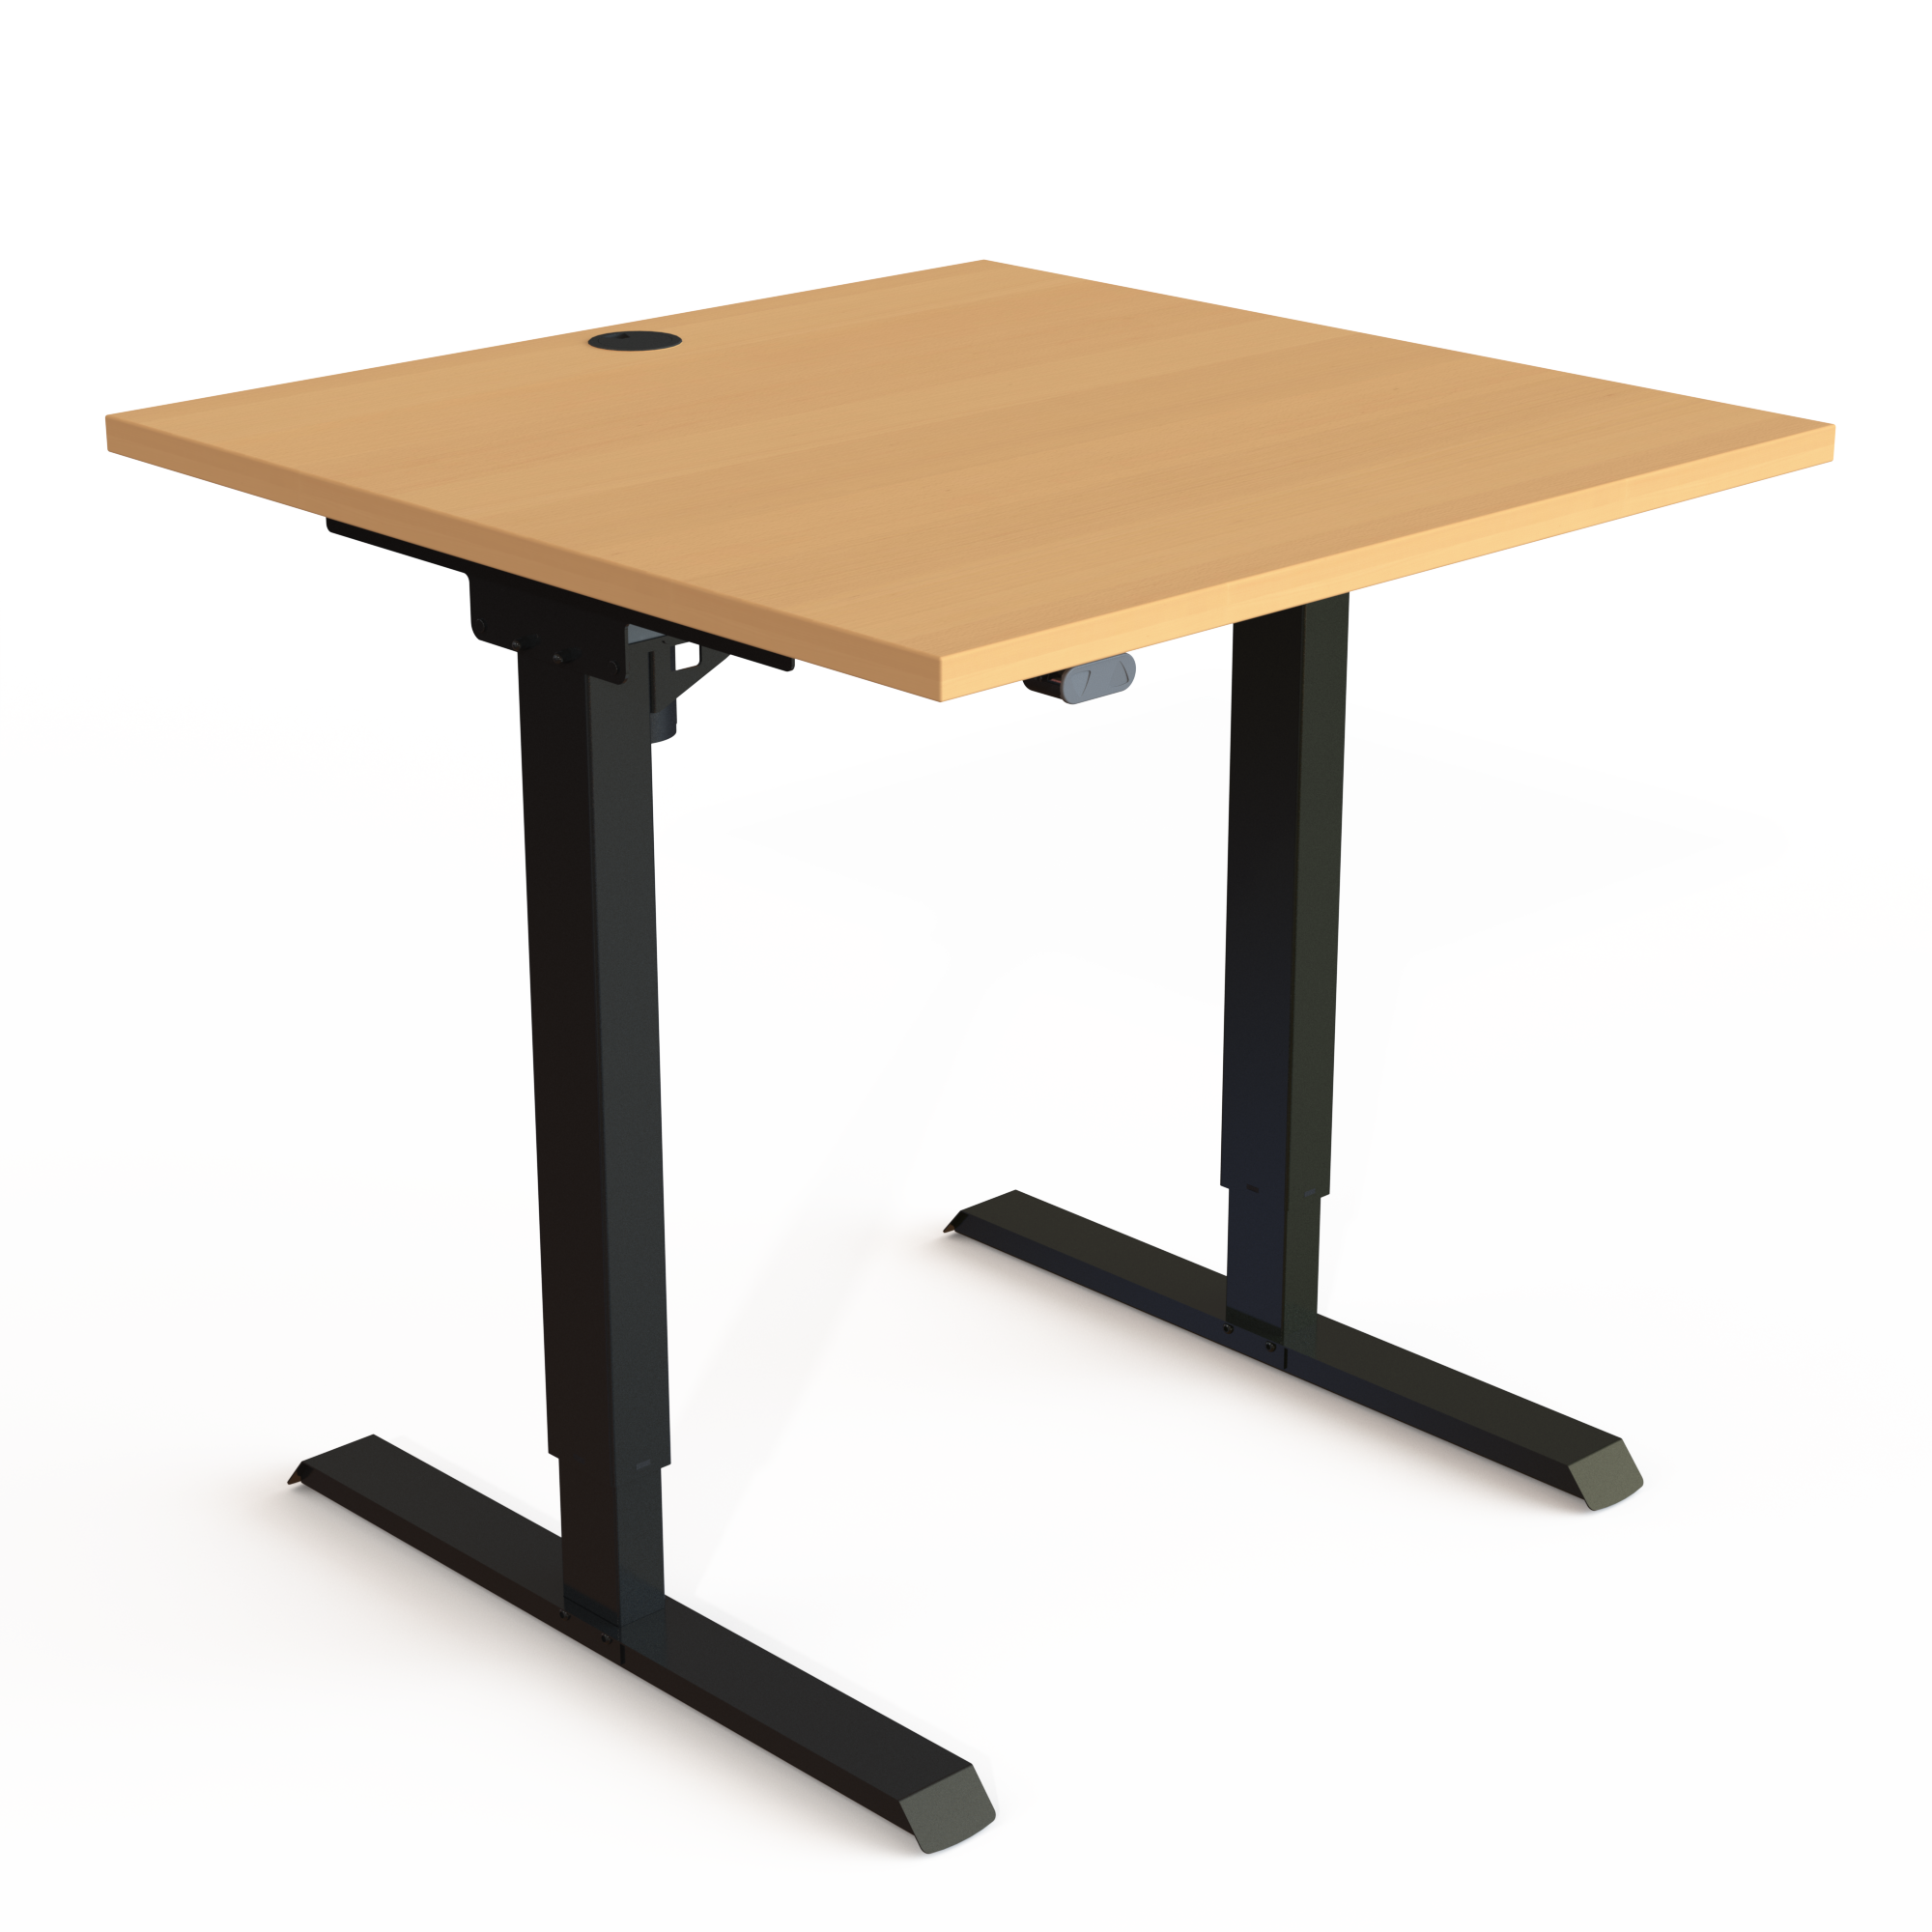 Schreibtisch steh/sitz | 80x80 cm | Buche mit schwarzem Gestell